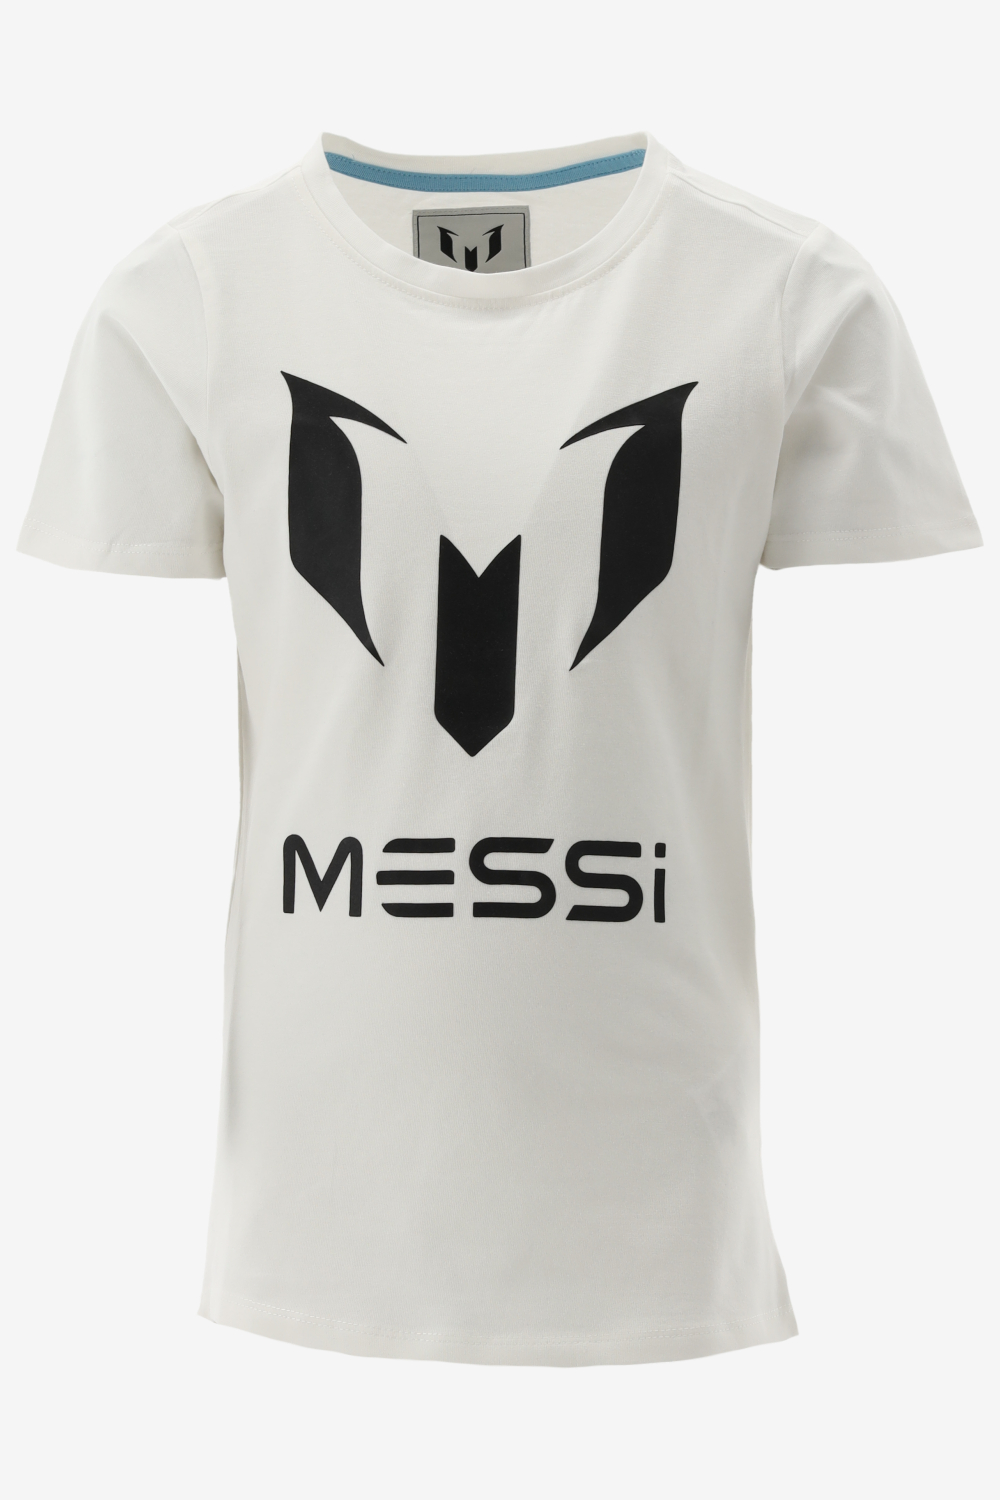 Vingino T-shirt MESSI